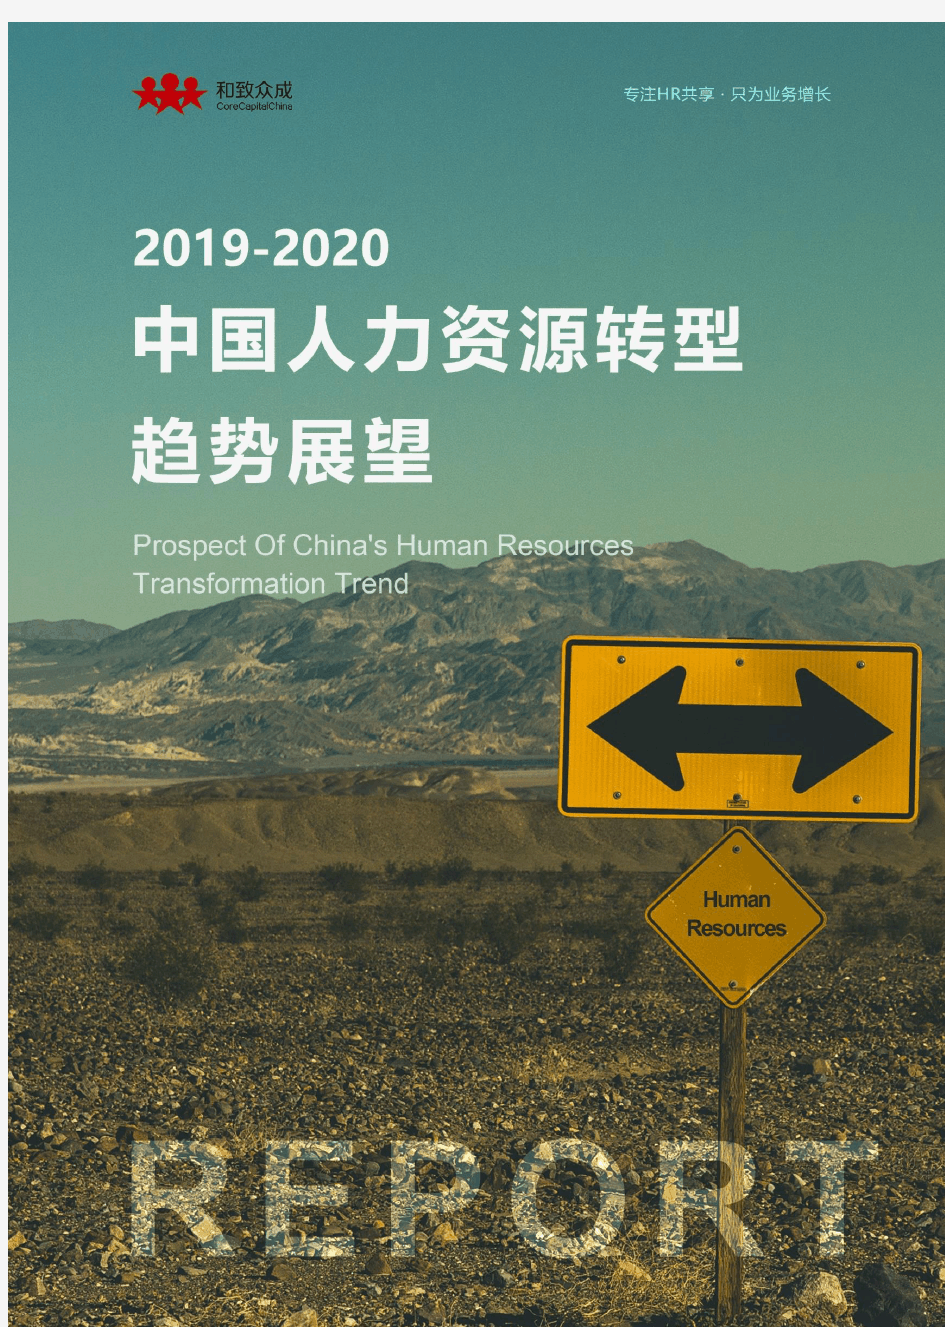 《2019-2020中国人力资源转型趋势展望》